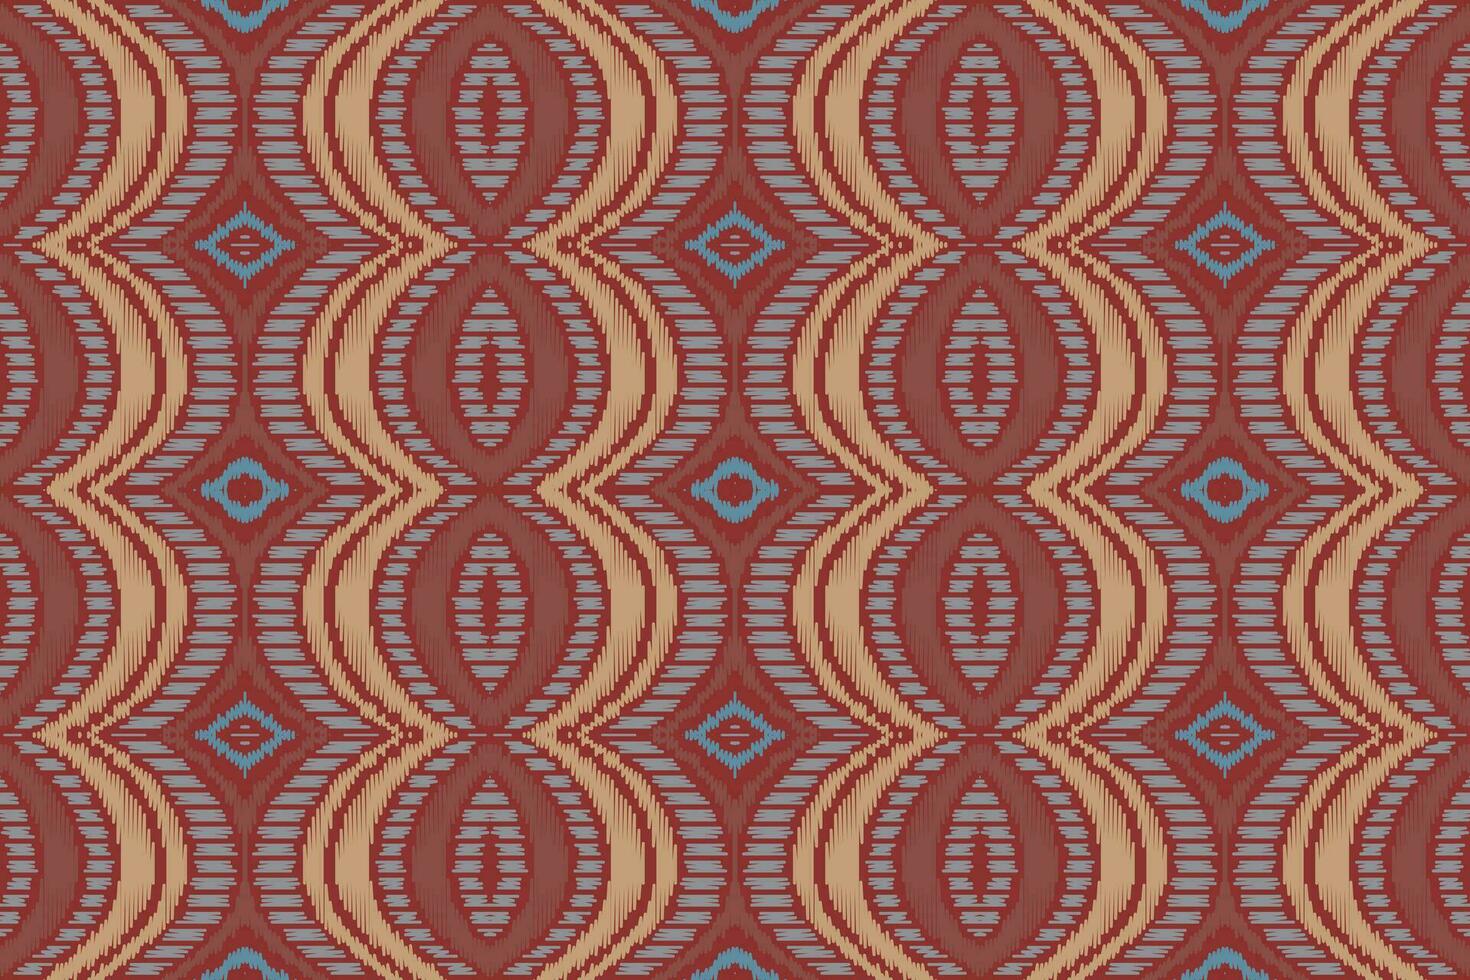 ikat damasco paisley bordado fundo. ikat divisa geométrico étnico oriental padronizar tradicional.asteca estilo abstrato vetor ilustração.design para textura,tecido,vestuário,embrulho,sarongue.